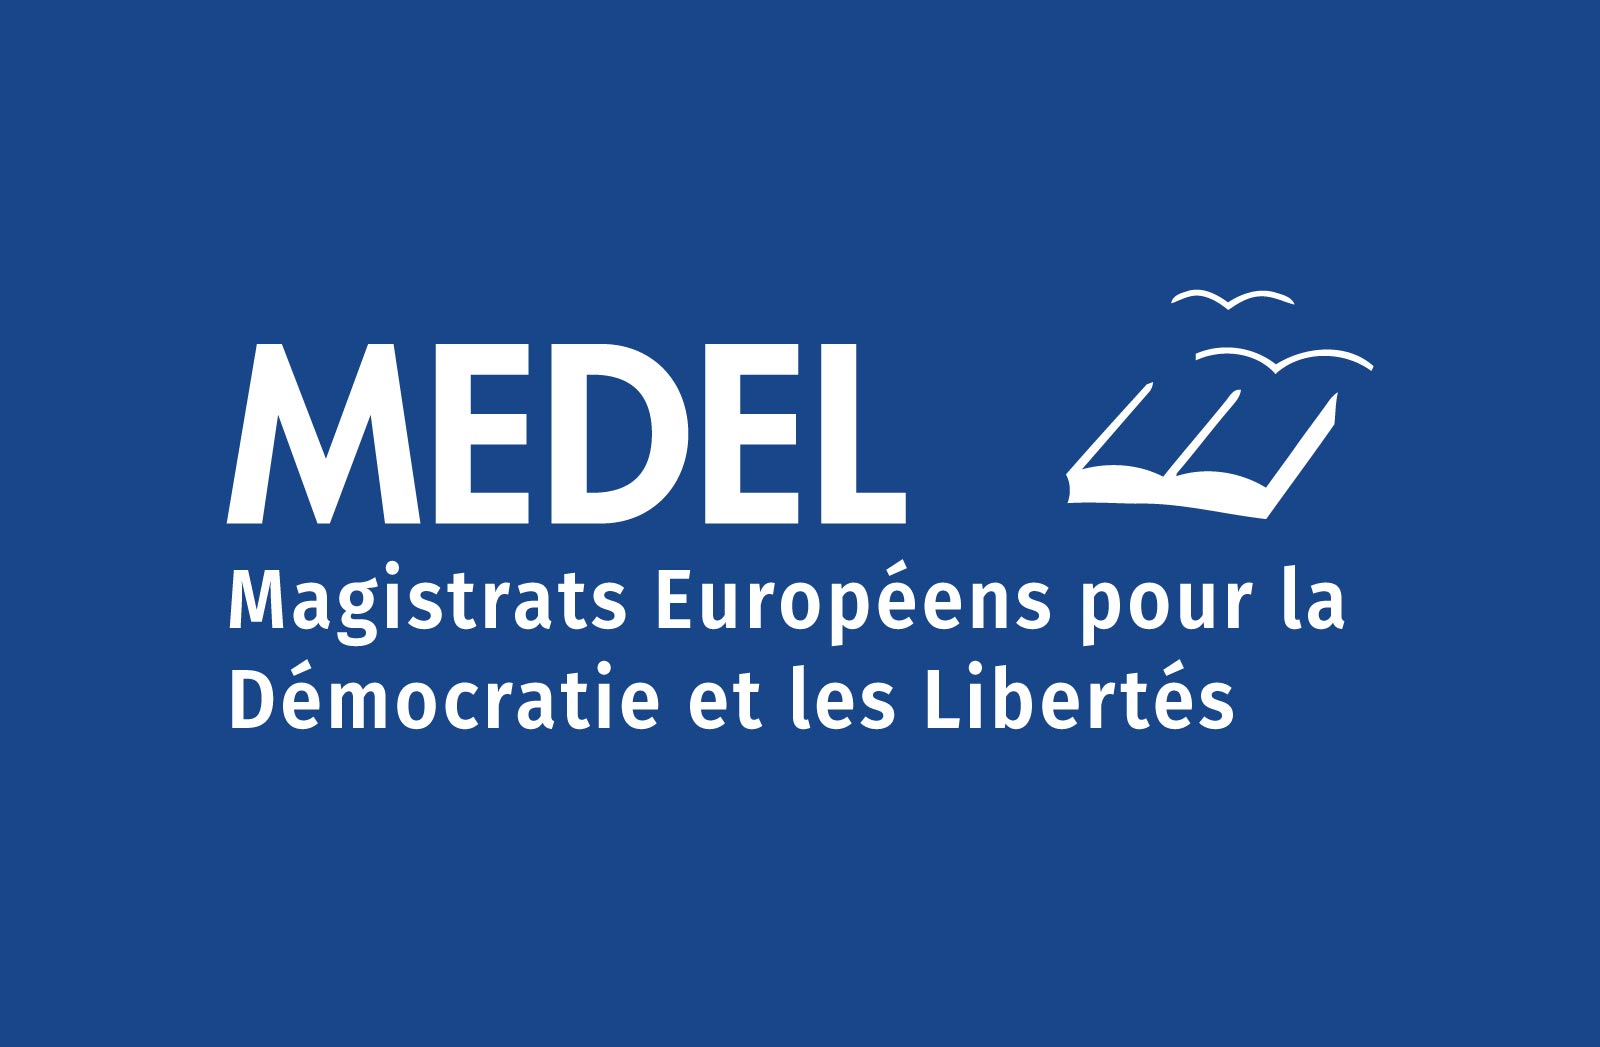 MEDEL - Magistrats européens pour la démocratie et les libertés